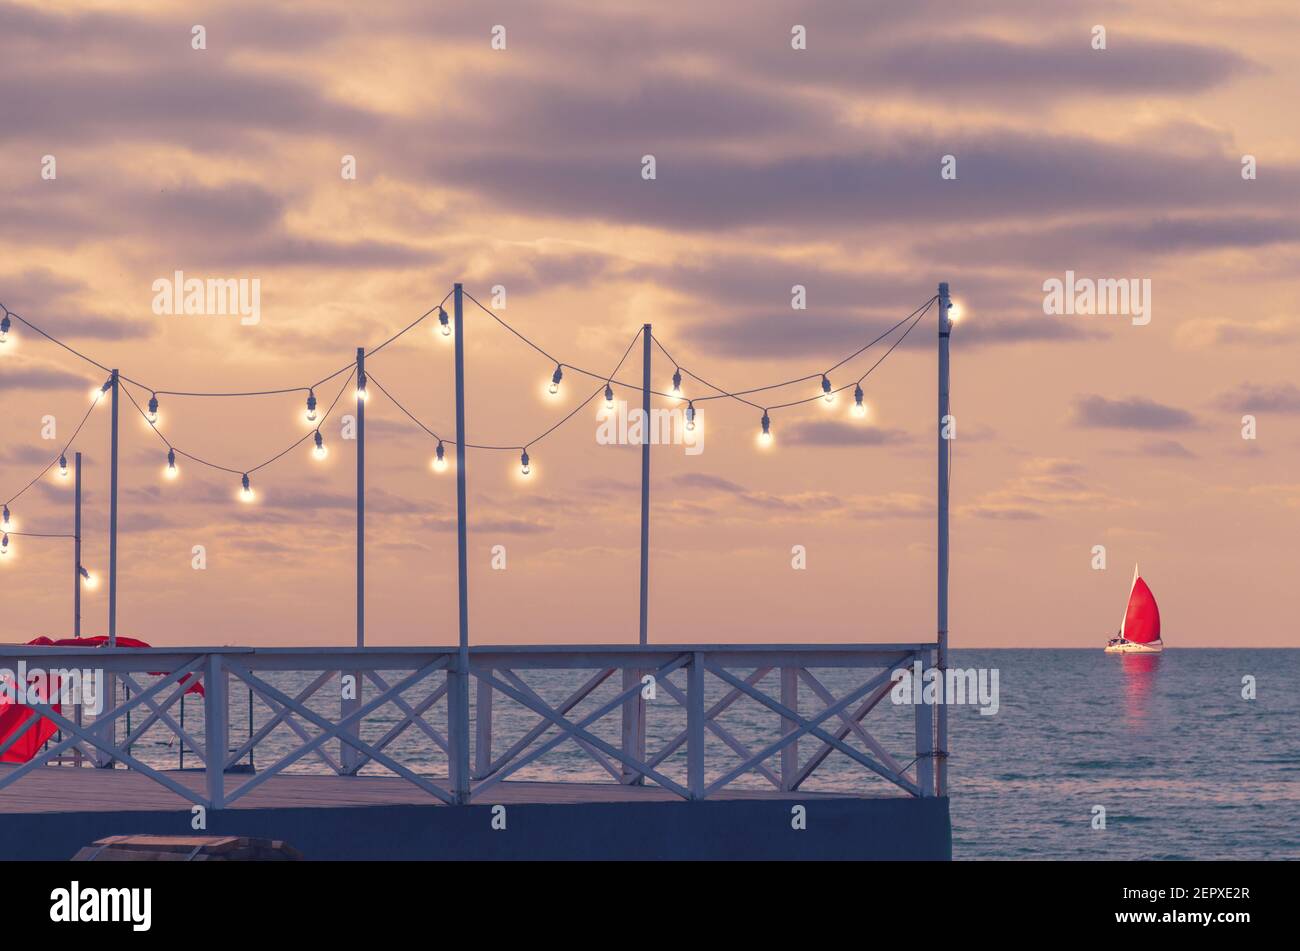 Romantischer Pier bei Sonnenuntergang mit glühenden Glühbirnen, Seitenblick. Eine Yacht mit rotem Segel steht am Horizont. Stockfoto